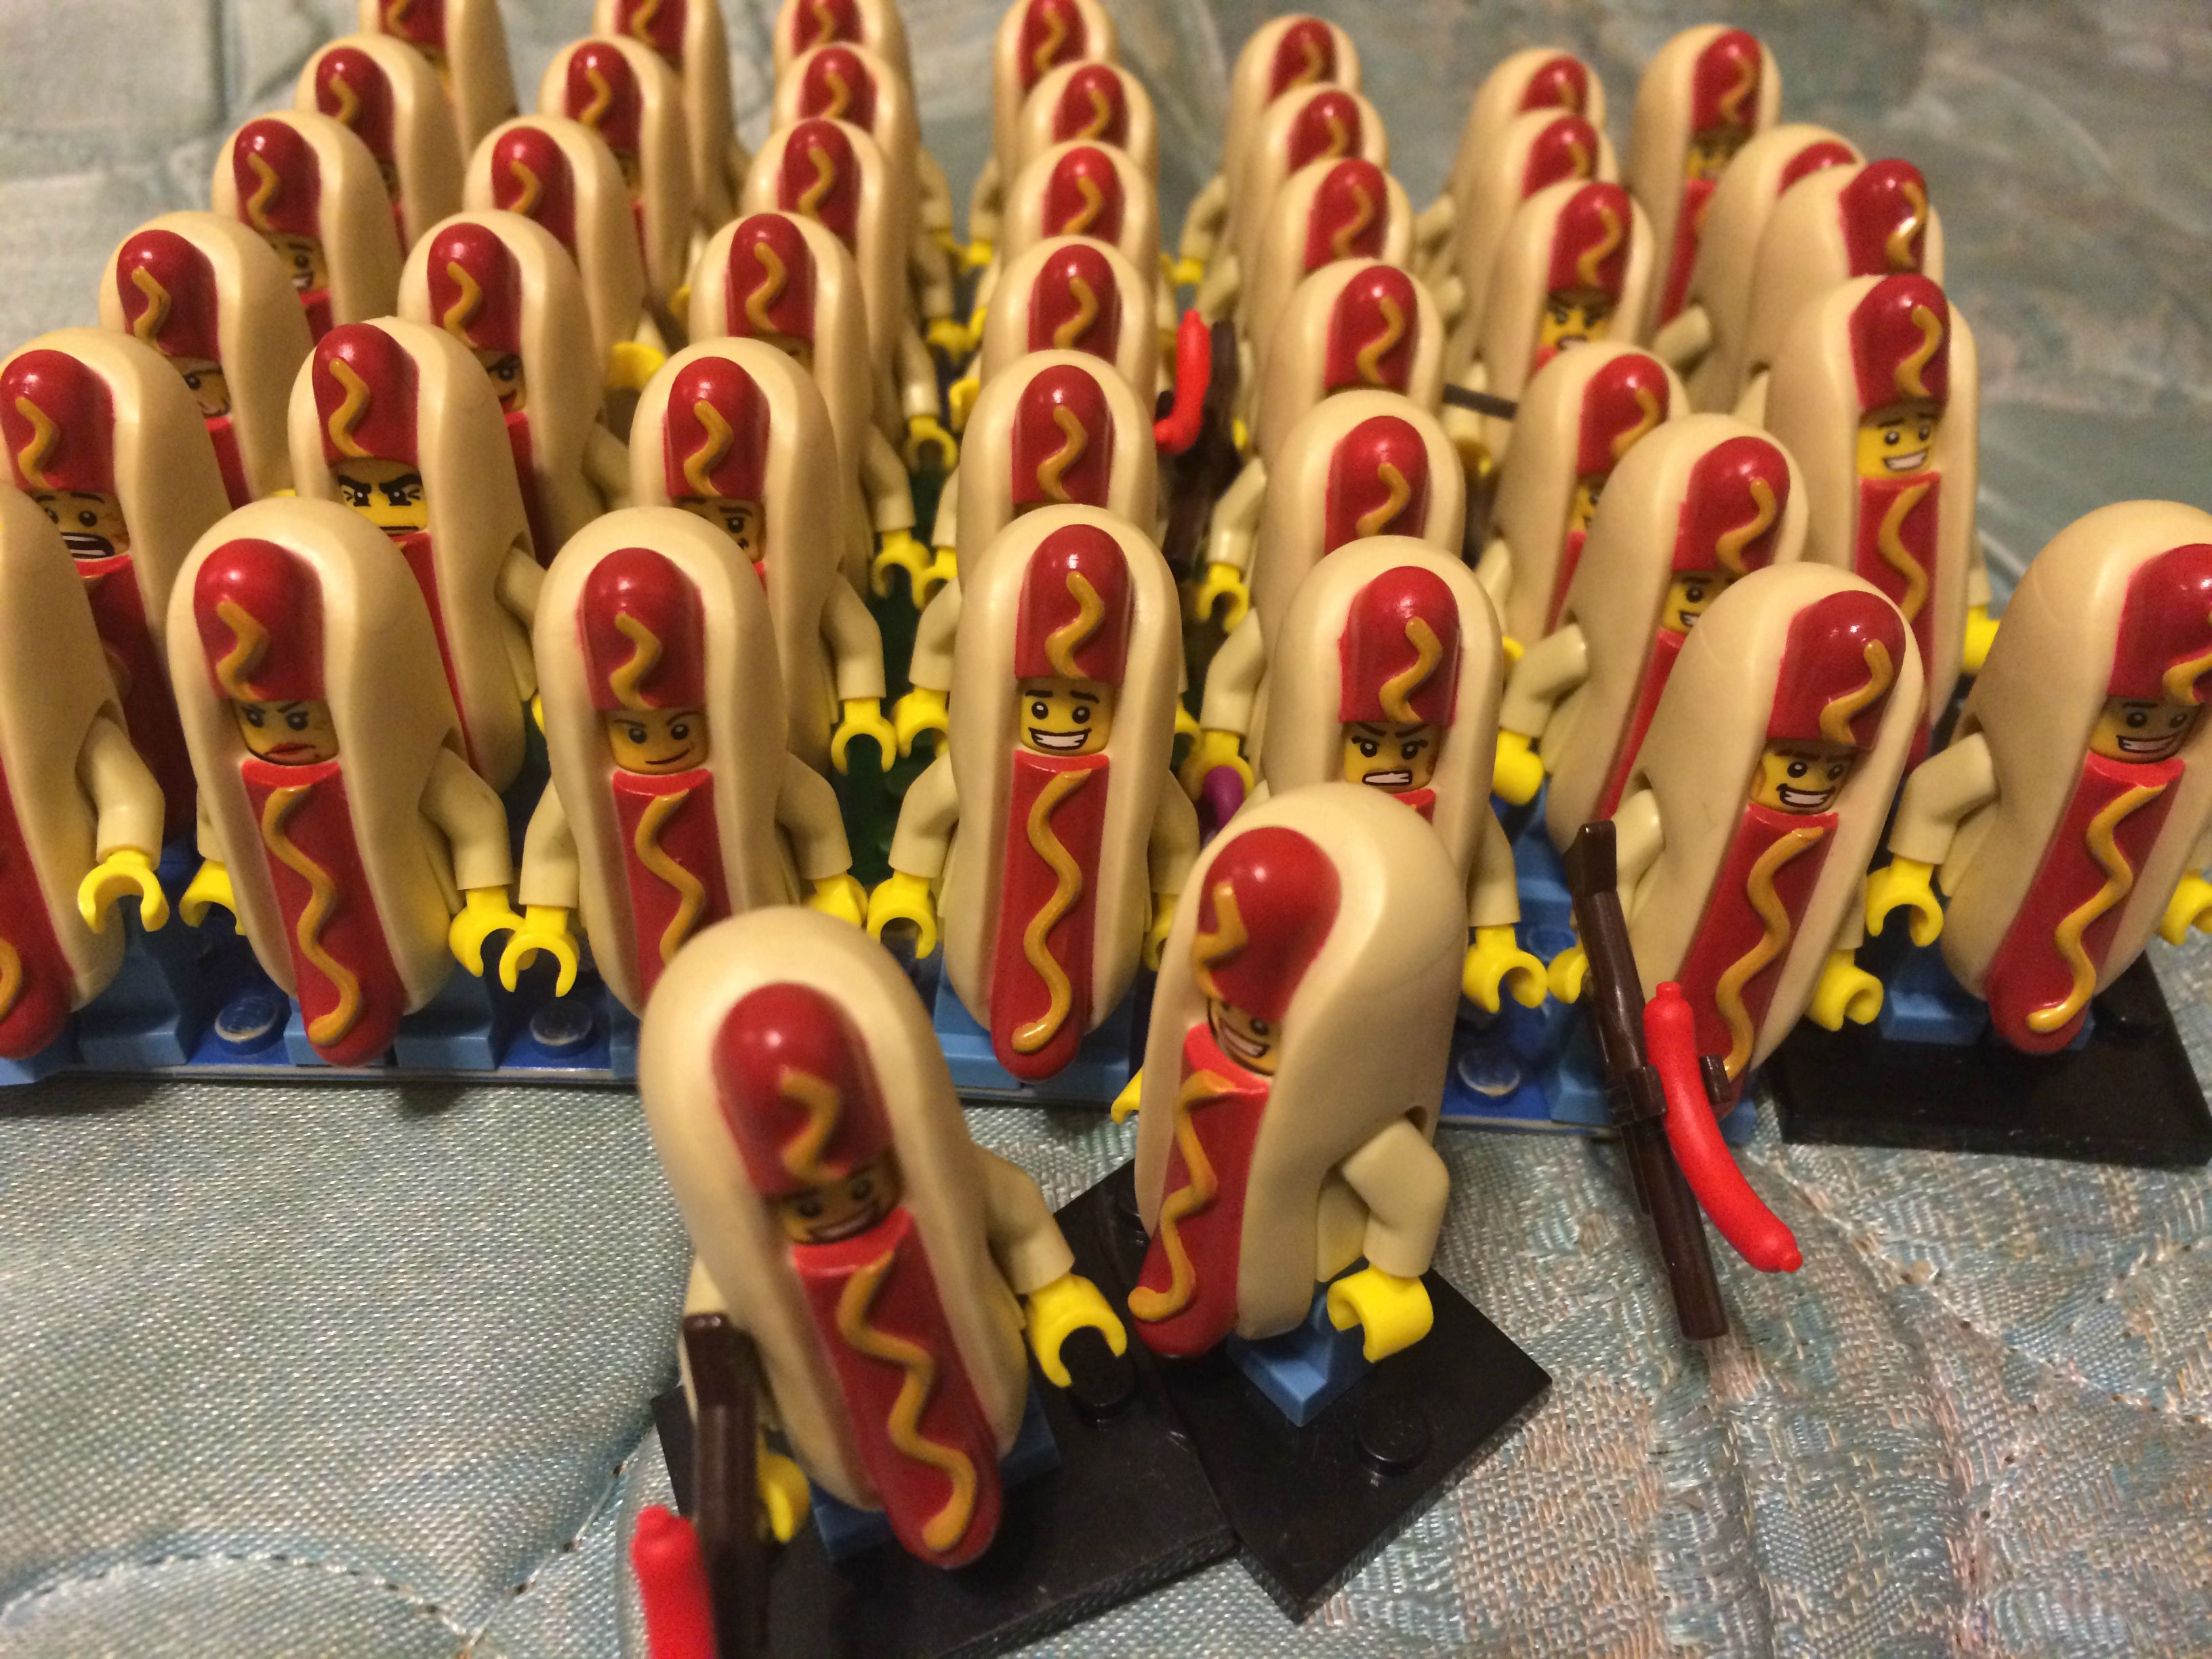 Lego hot dog